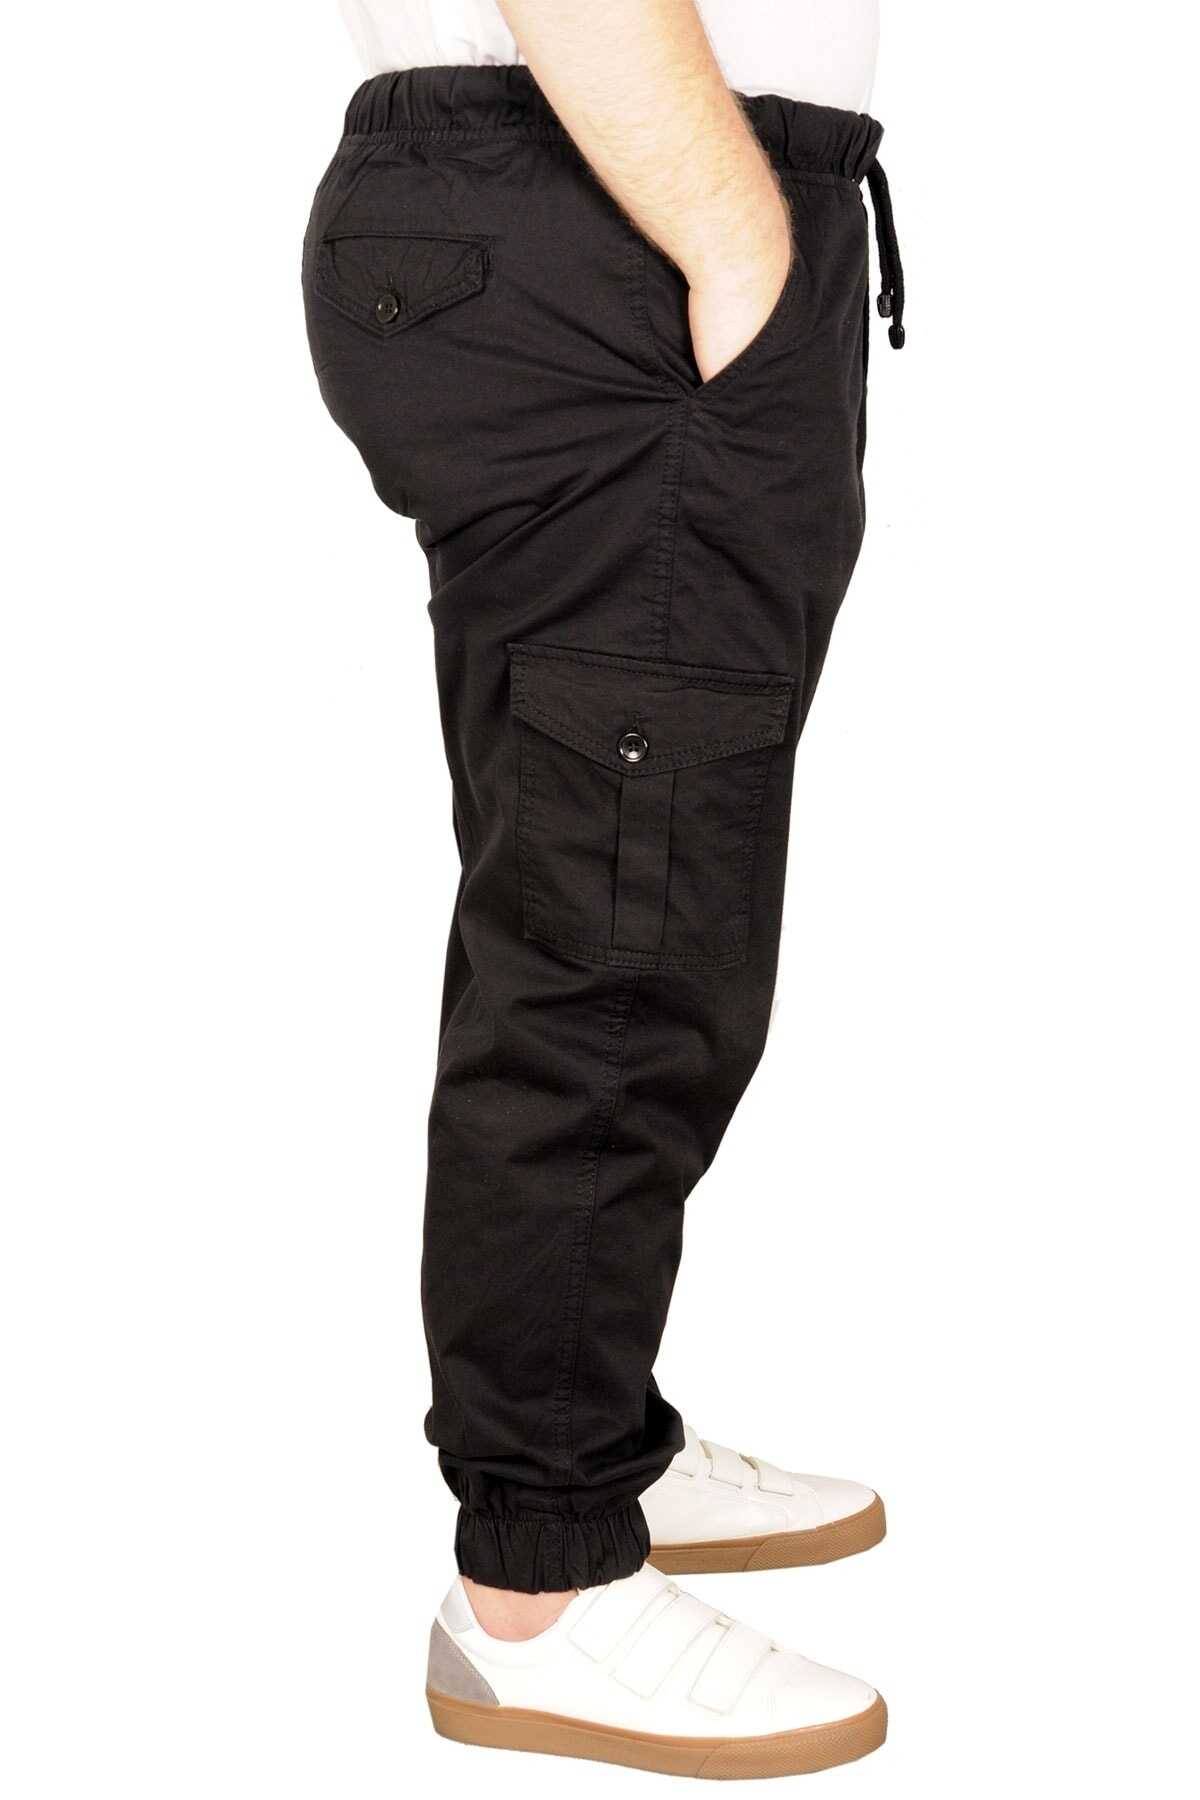 شلوار کتان سایز بزرگ گت دار کمر کش بندی جیب دار مشکی برند ModeXL 